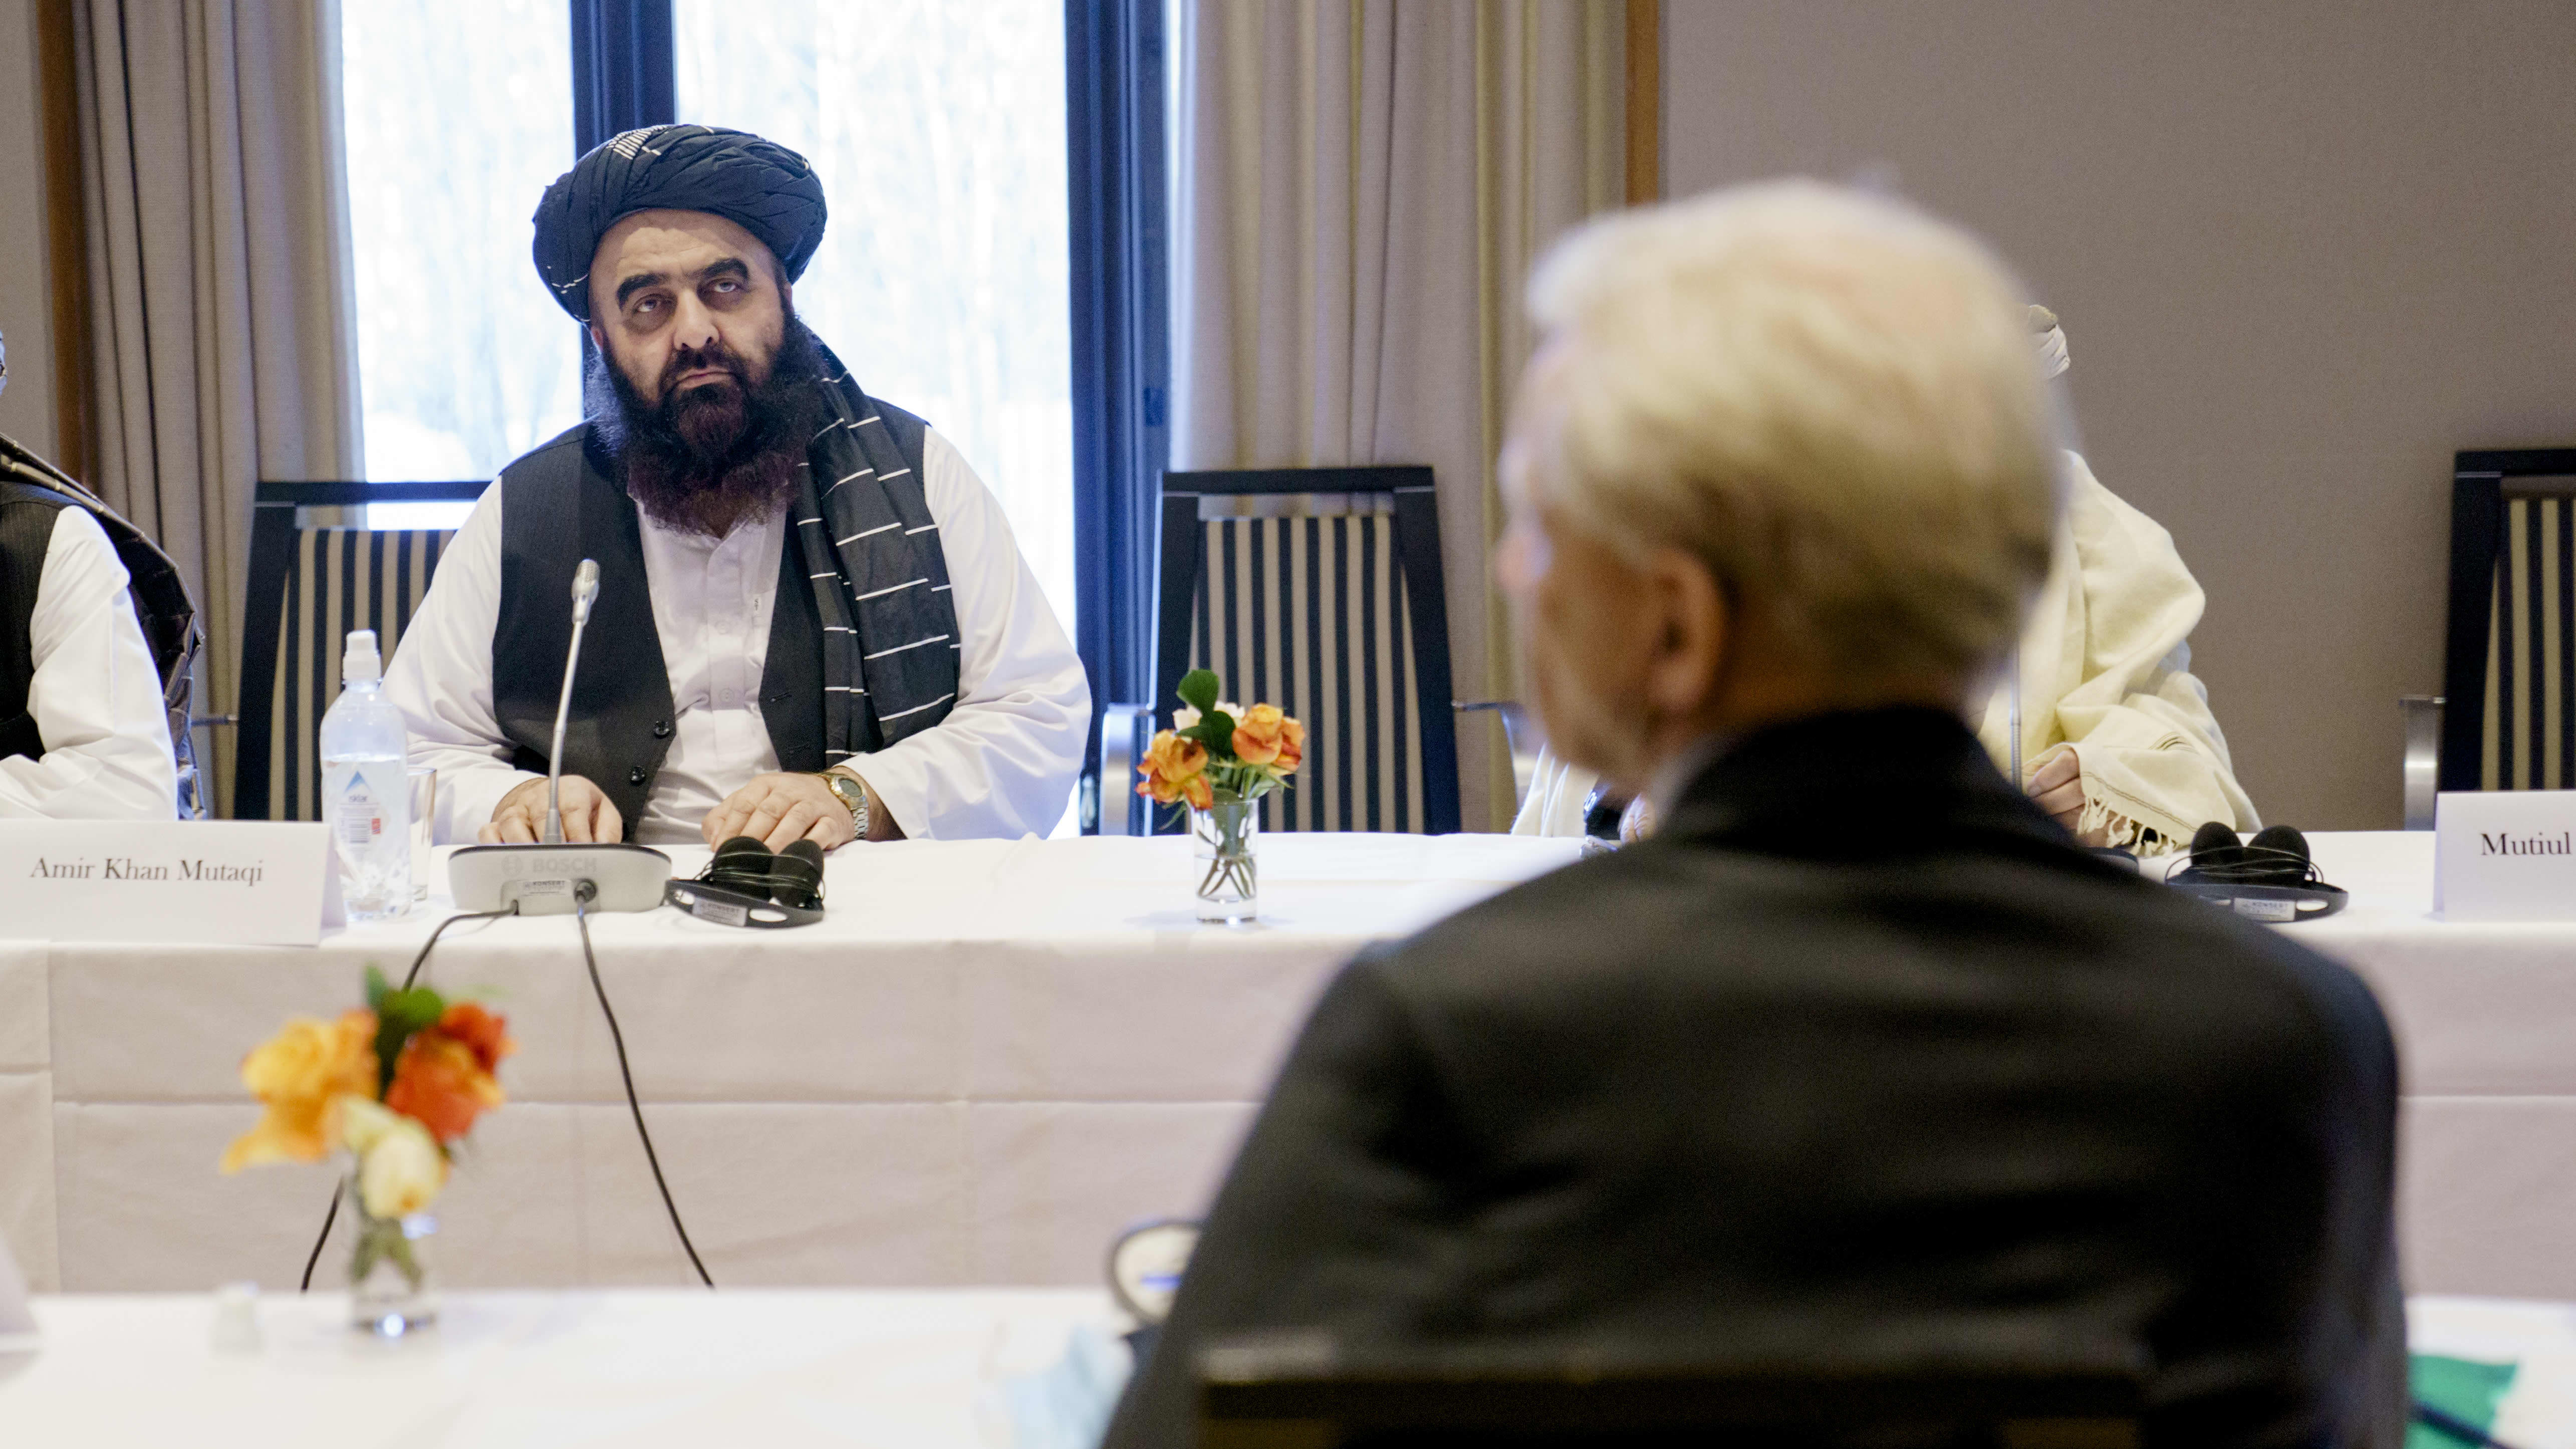 Talibanin ulkoministeri Amir Khan Muttaqi neuvottelupöydän ääressä.